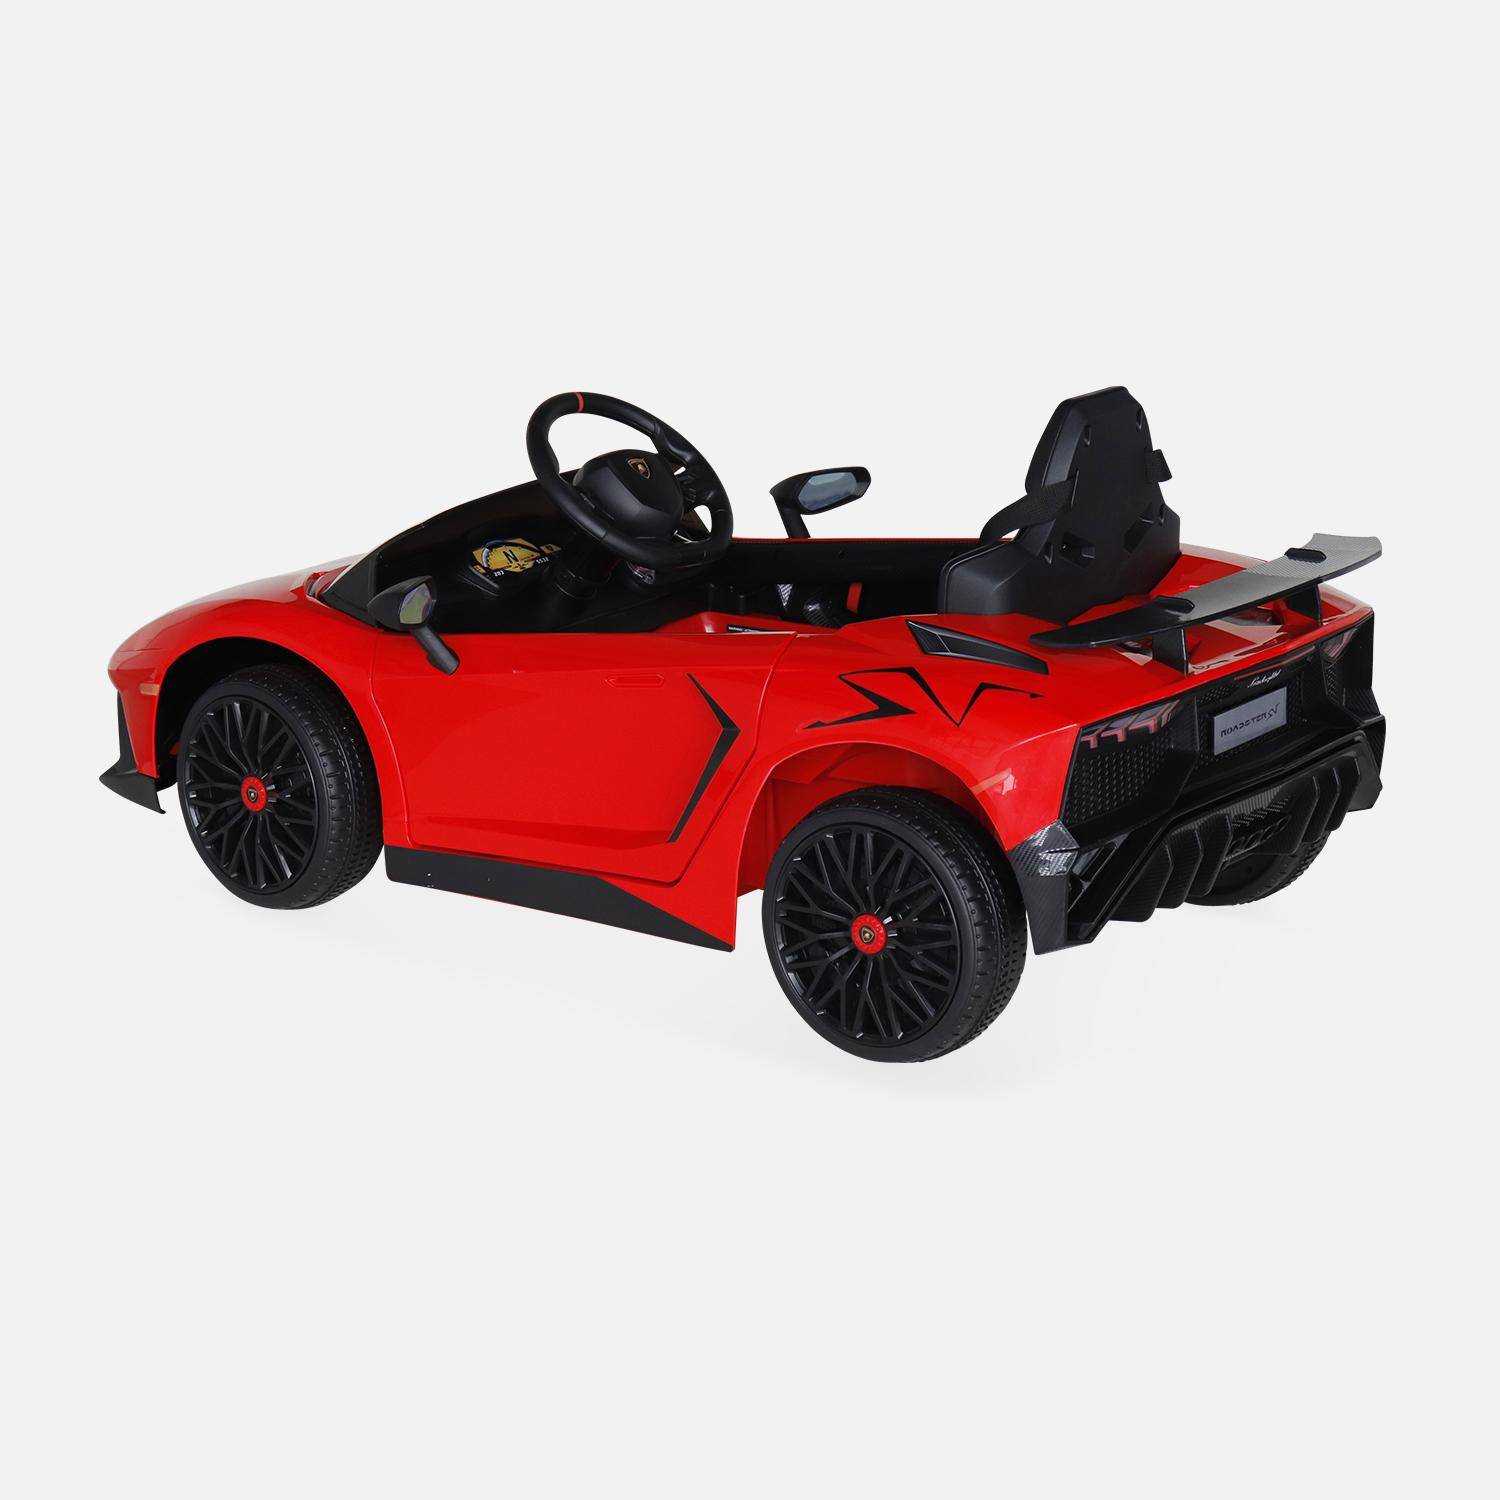 Voiture électrique 12V pour enfant Lamborghini, rouge, 1 place, avec autoradio, télécommande, MP3, port USB et phares fonctionnels Photo3